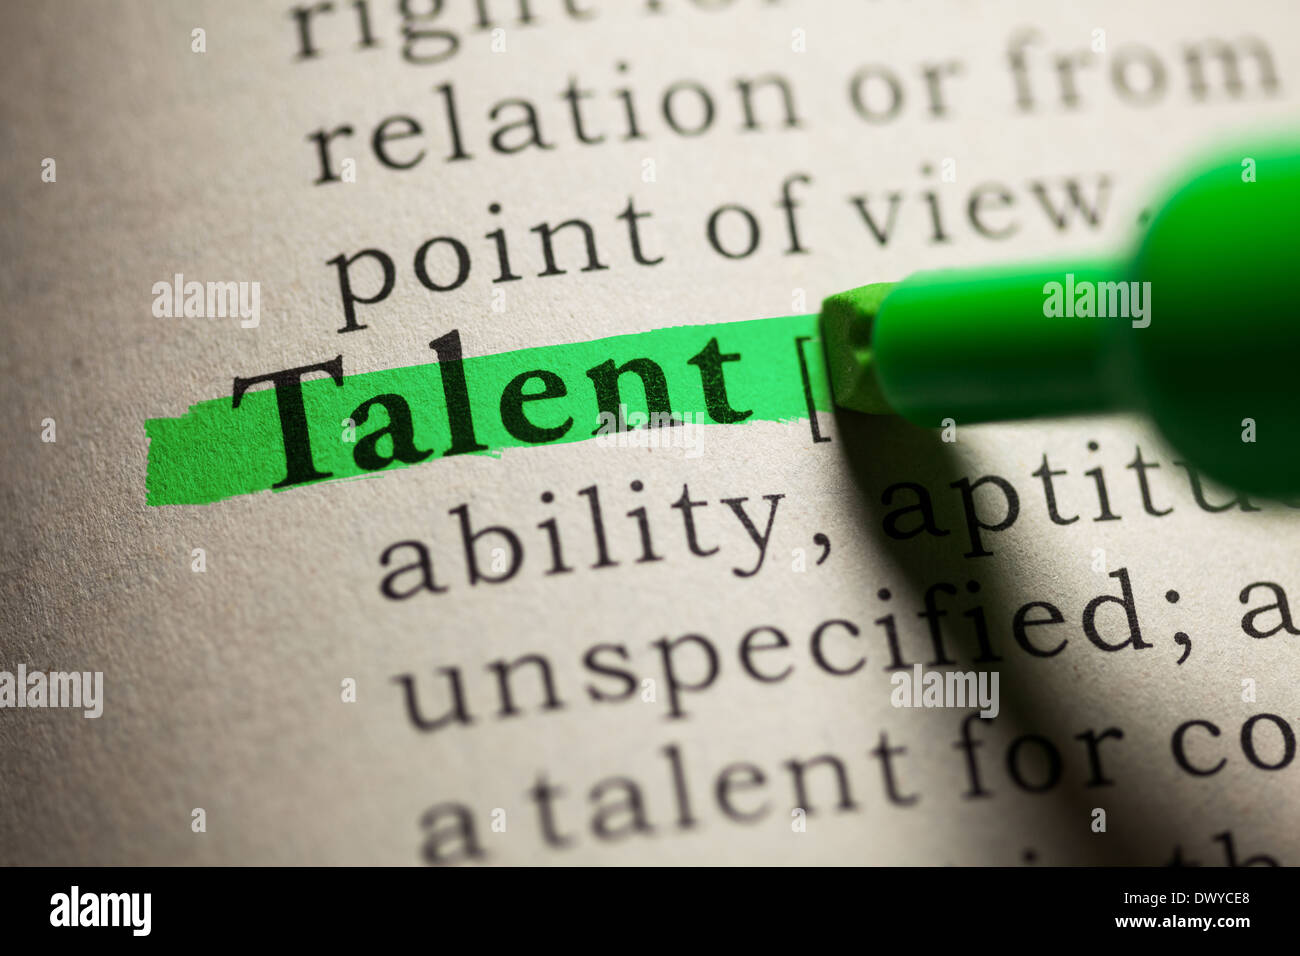 Fake Dizionario, definizione della parola talento. Foto Stock